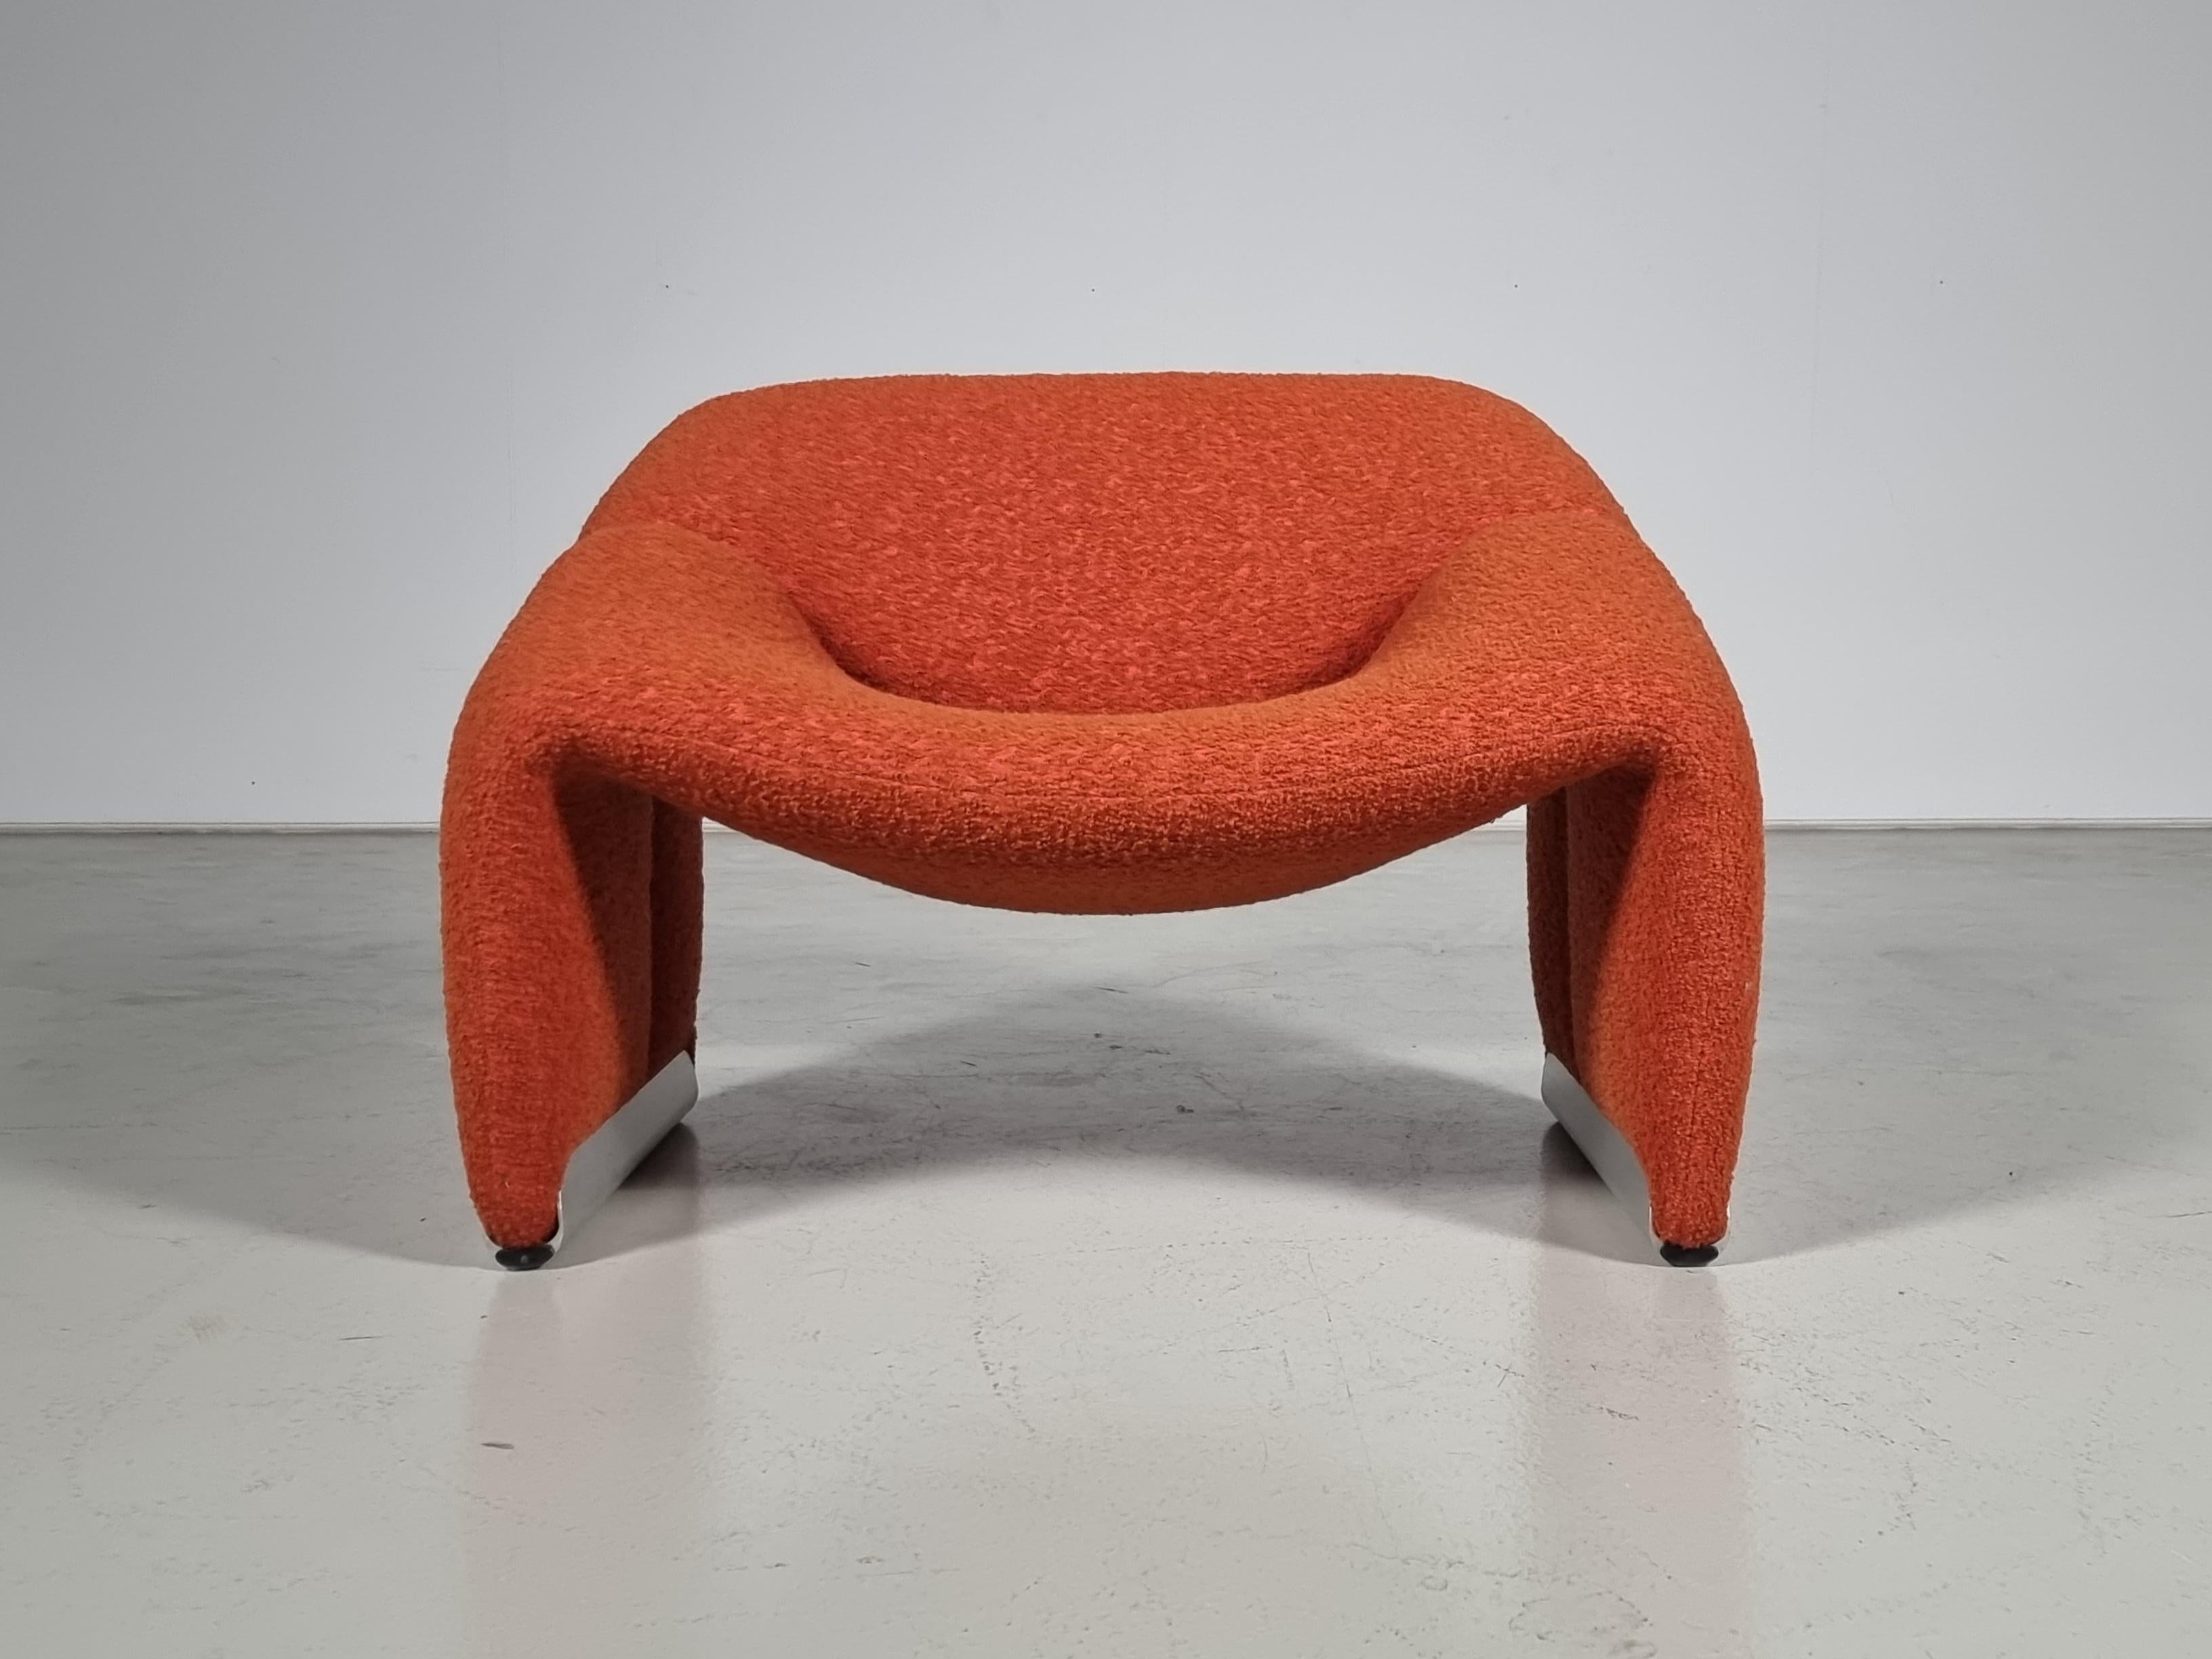 Der Groovy-Stuhl, auch F598 genannt, wurde 1973 von dem französischen Top-Designer Pierre Paulin für den niederländischen Avantgarde-Möbelhersteller Artifort entworfen. Seine Kompaktheit in Verbindung mit hohem Komfort und natürlich seinem